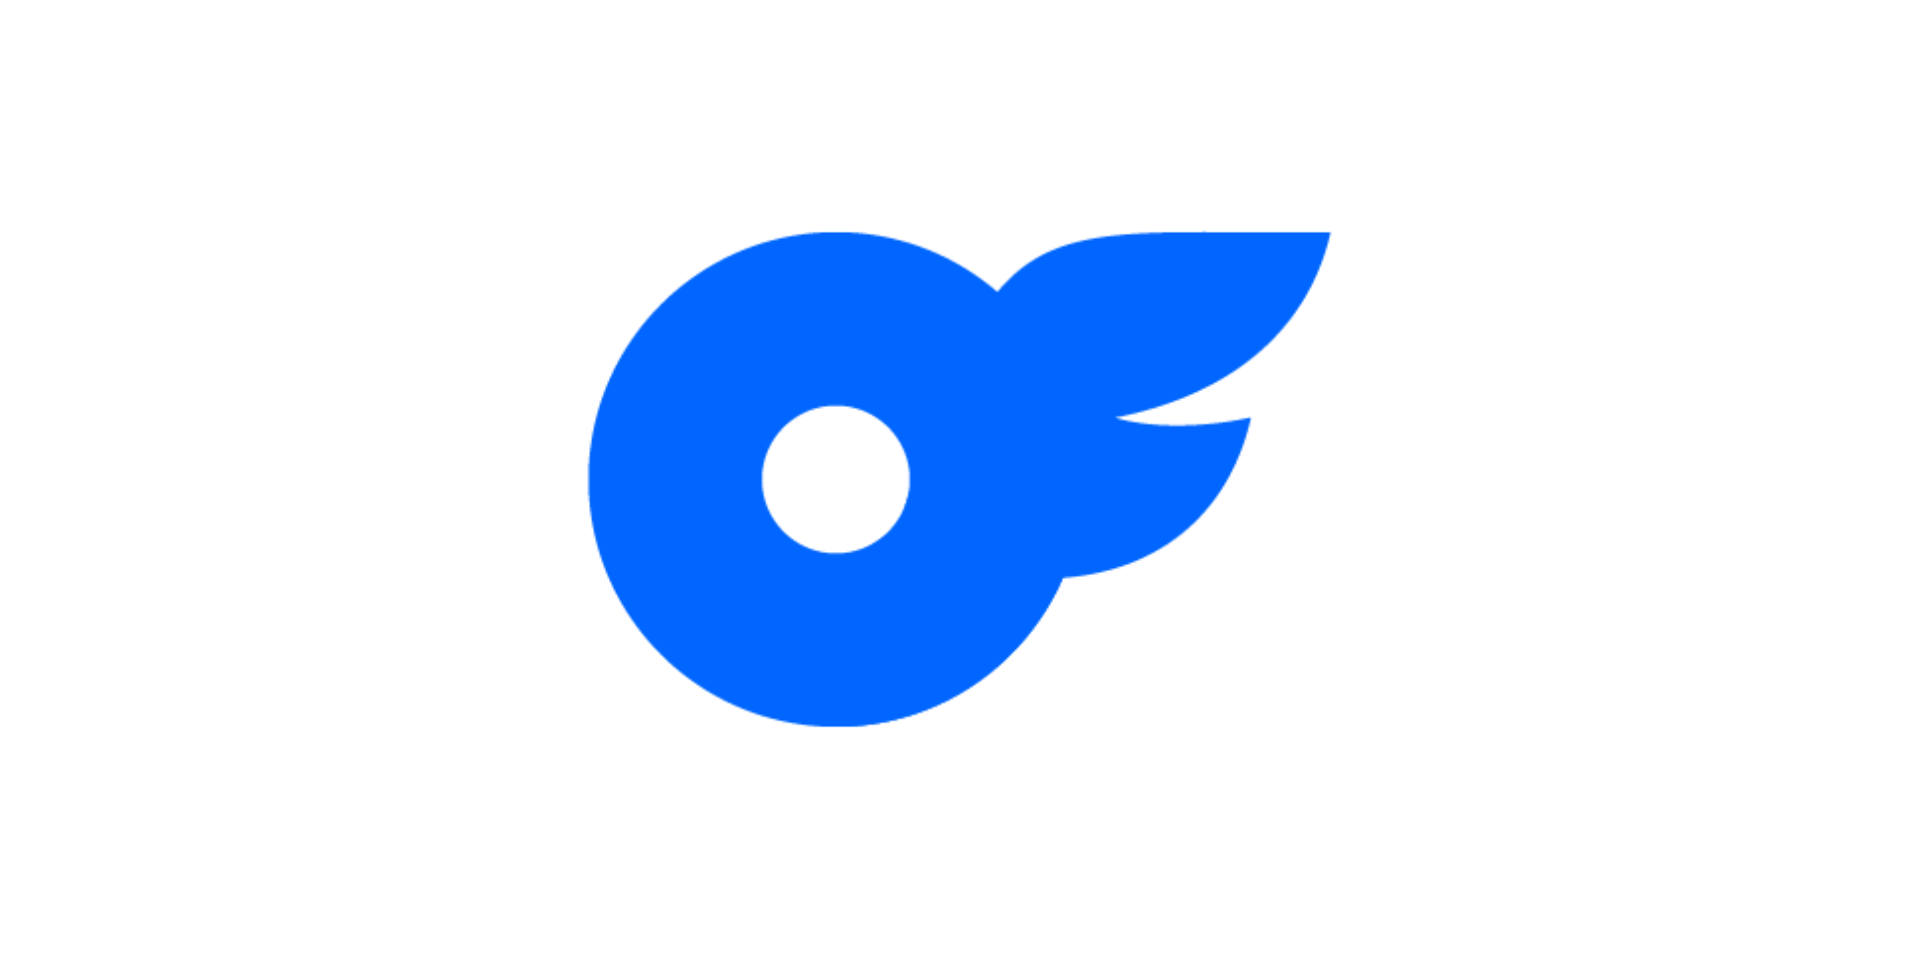 Cual es el logo de la app onlyfans